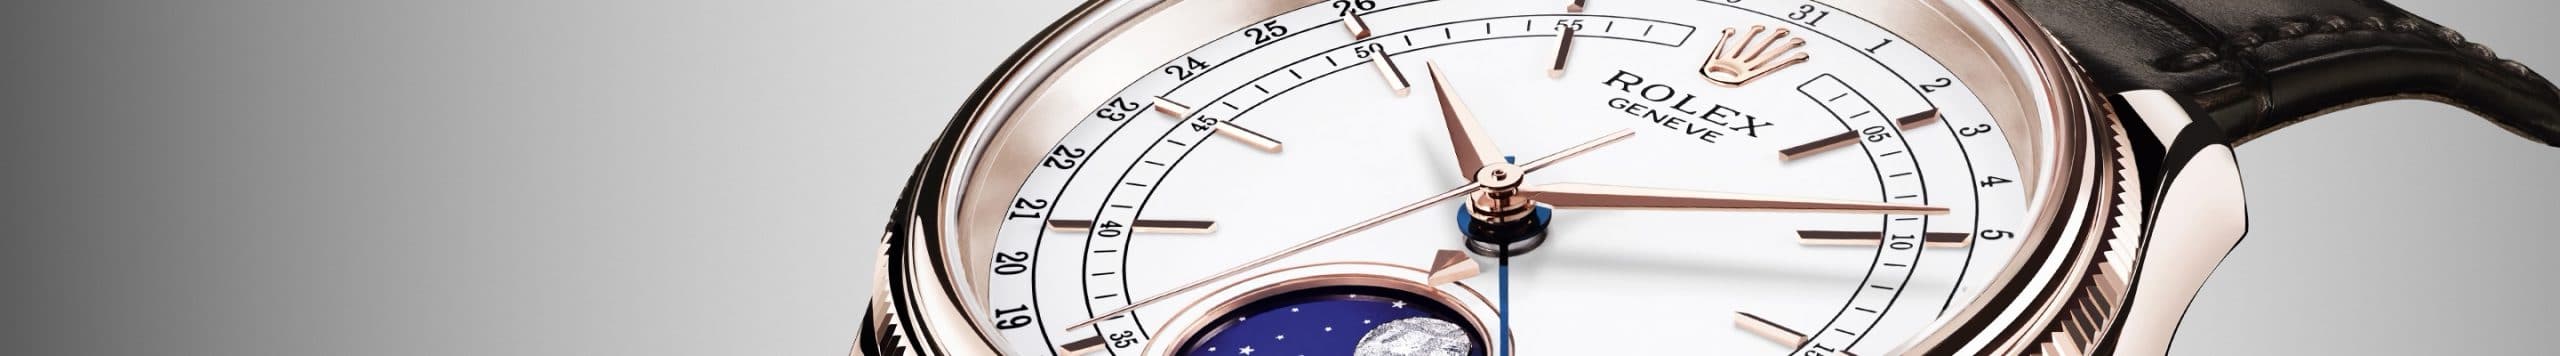 นาฬิกา Rolex Cellini ที่ เพนดูลัม เชียงใหม่